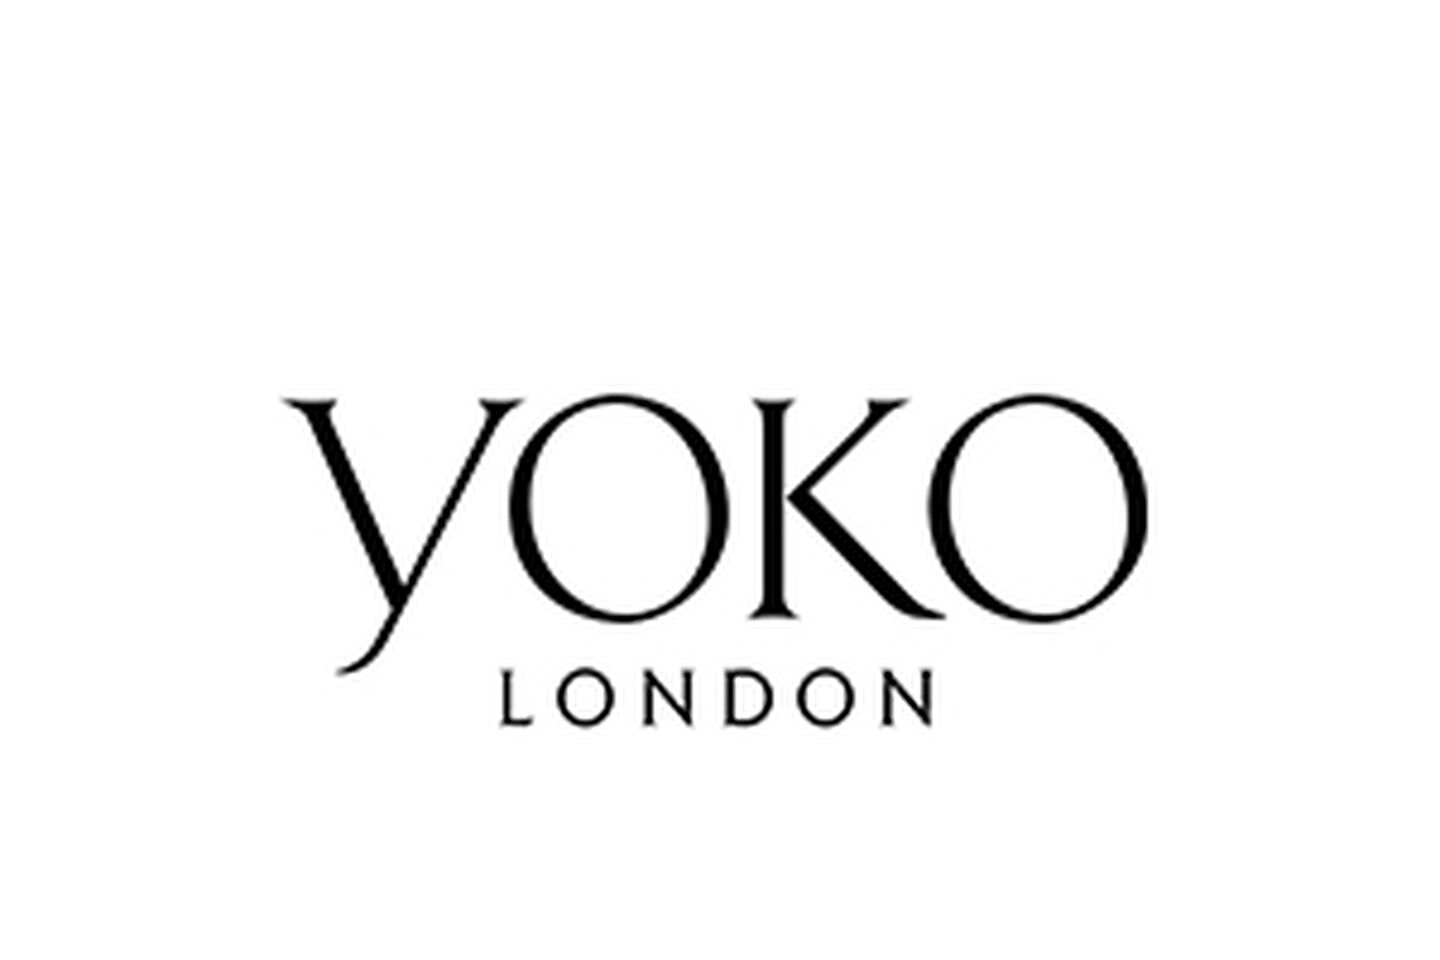 Yoko London